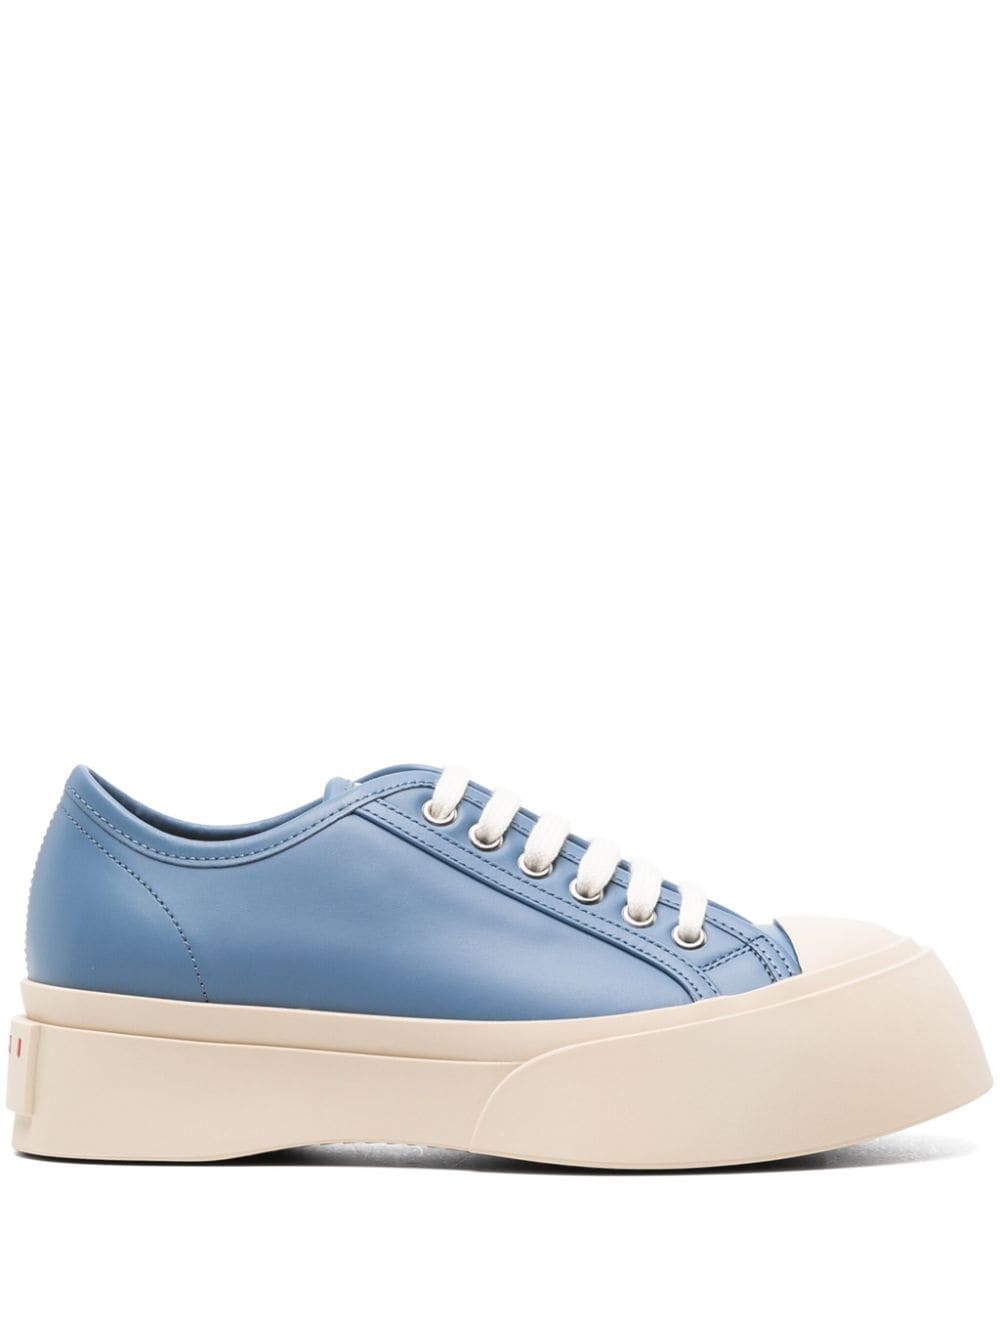 Marni Pablo leather sneakers - Blue von Marni